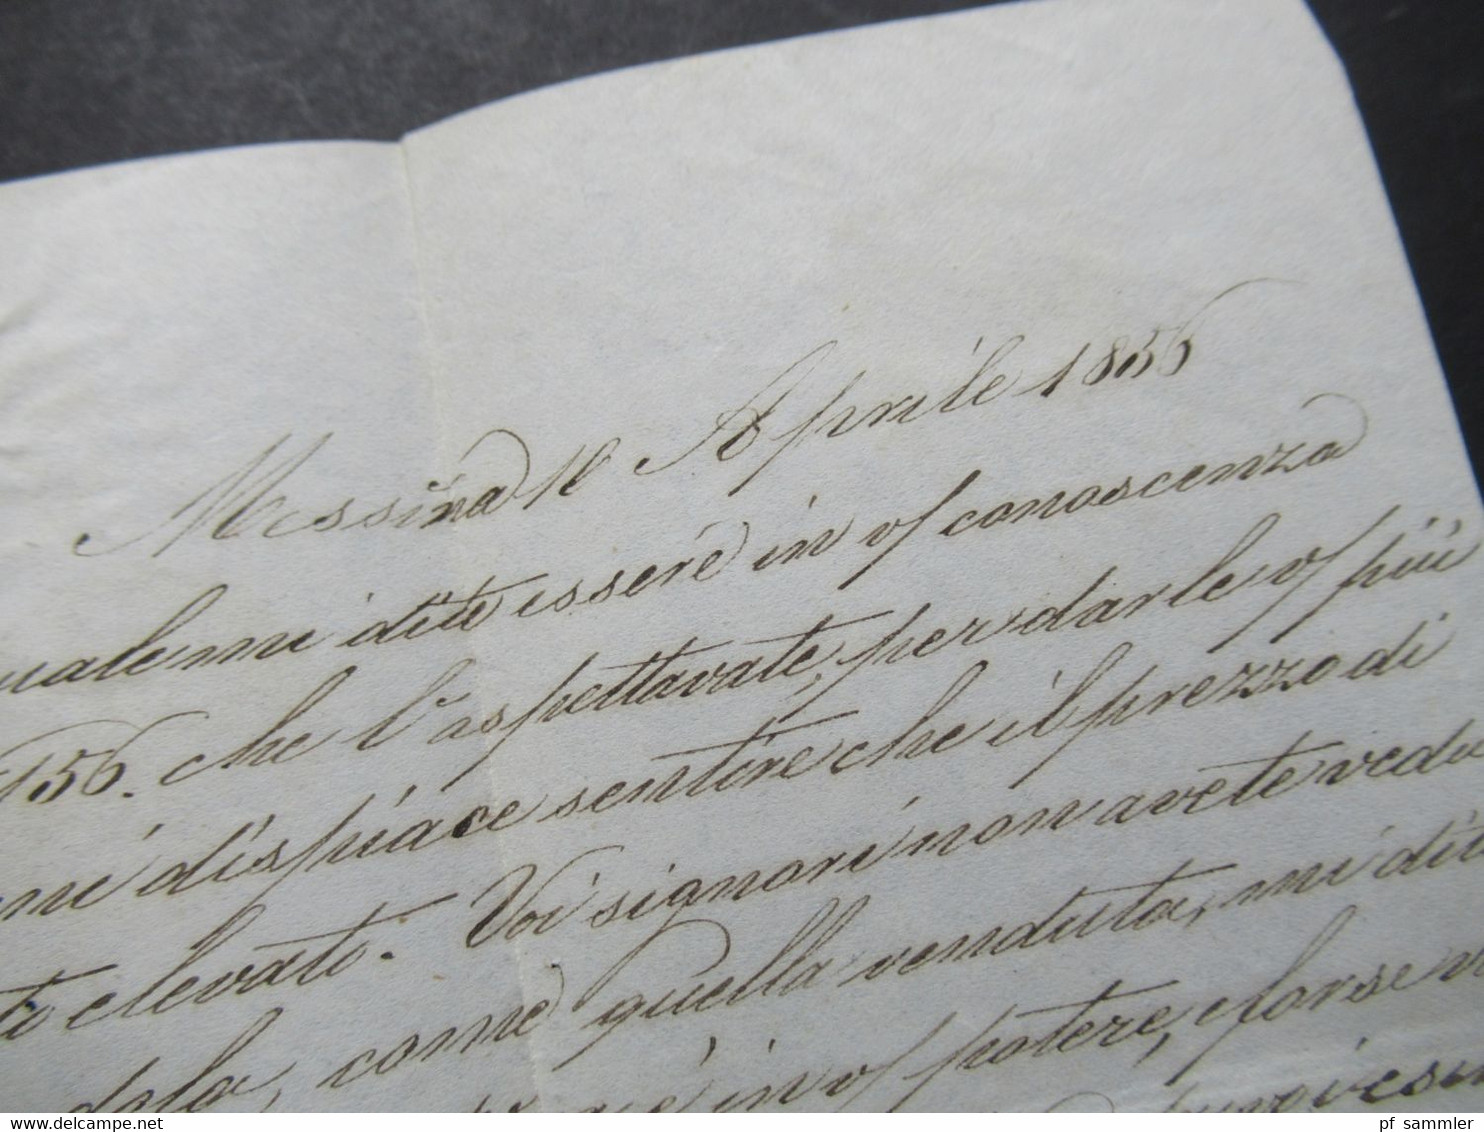 Italien 1856 Faltbrief mit Inhalt/ Auslandsbrief Messina - Lione Schiffspost?! handschriftlicher Vermerk Vapore Francese